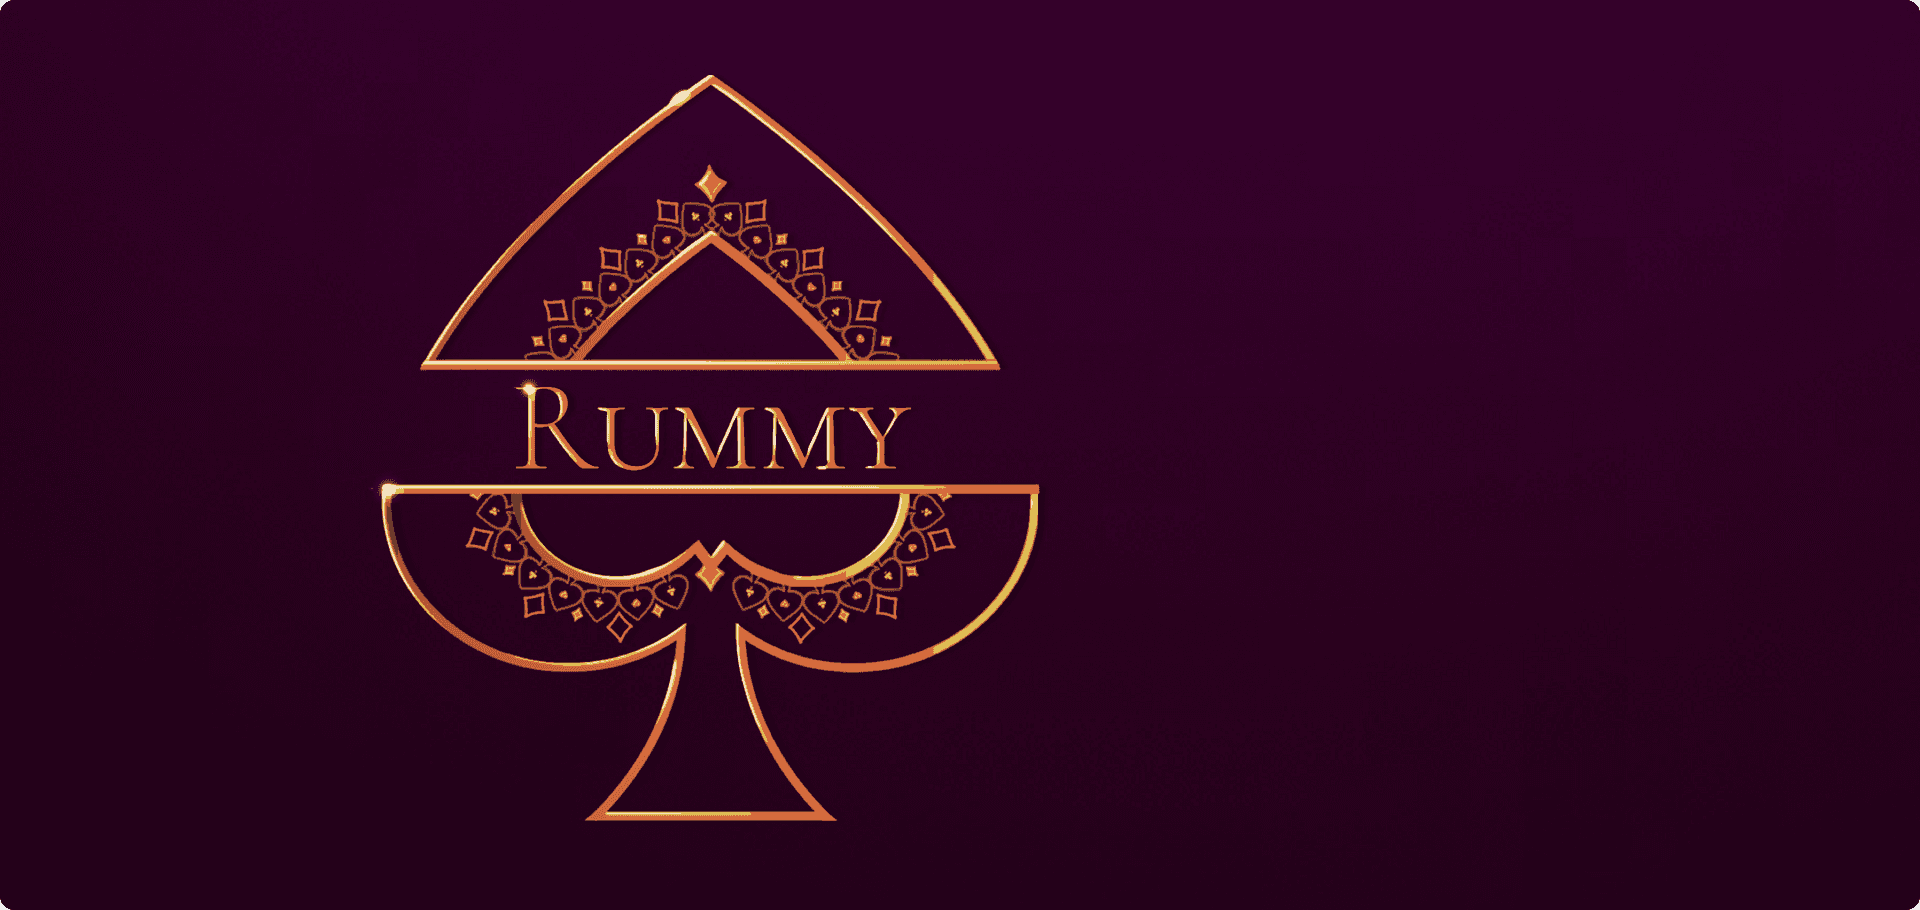 Rummy